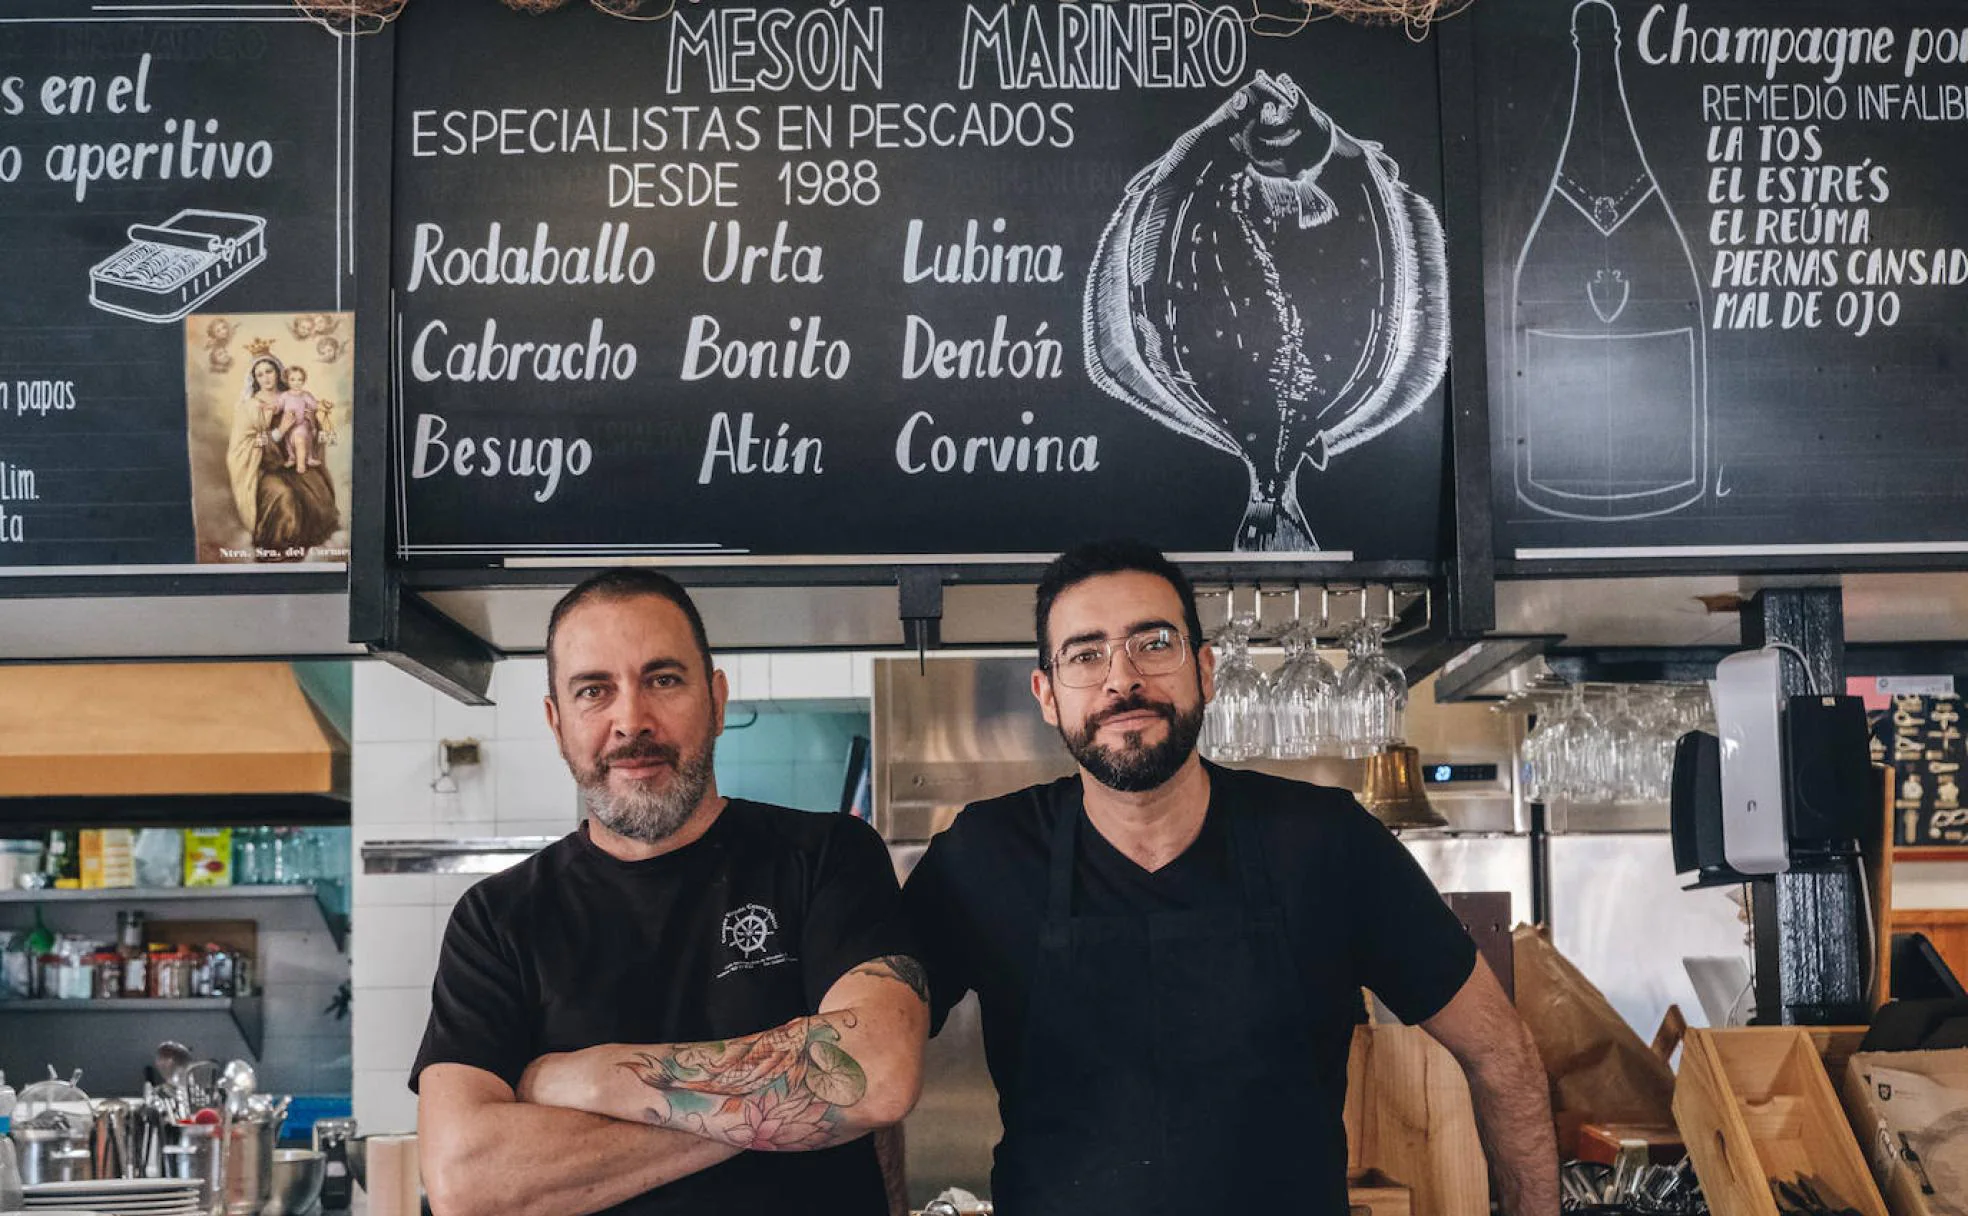 Julio y Javier, dueños del mesón posando en la barra del restaurante fundado en 1988